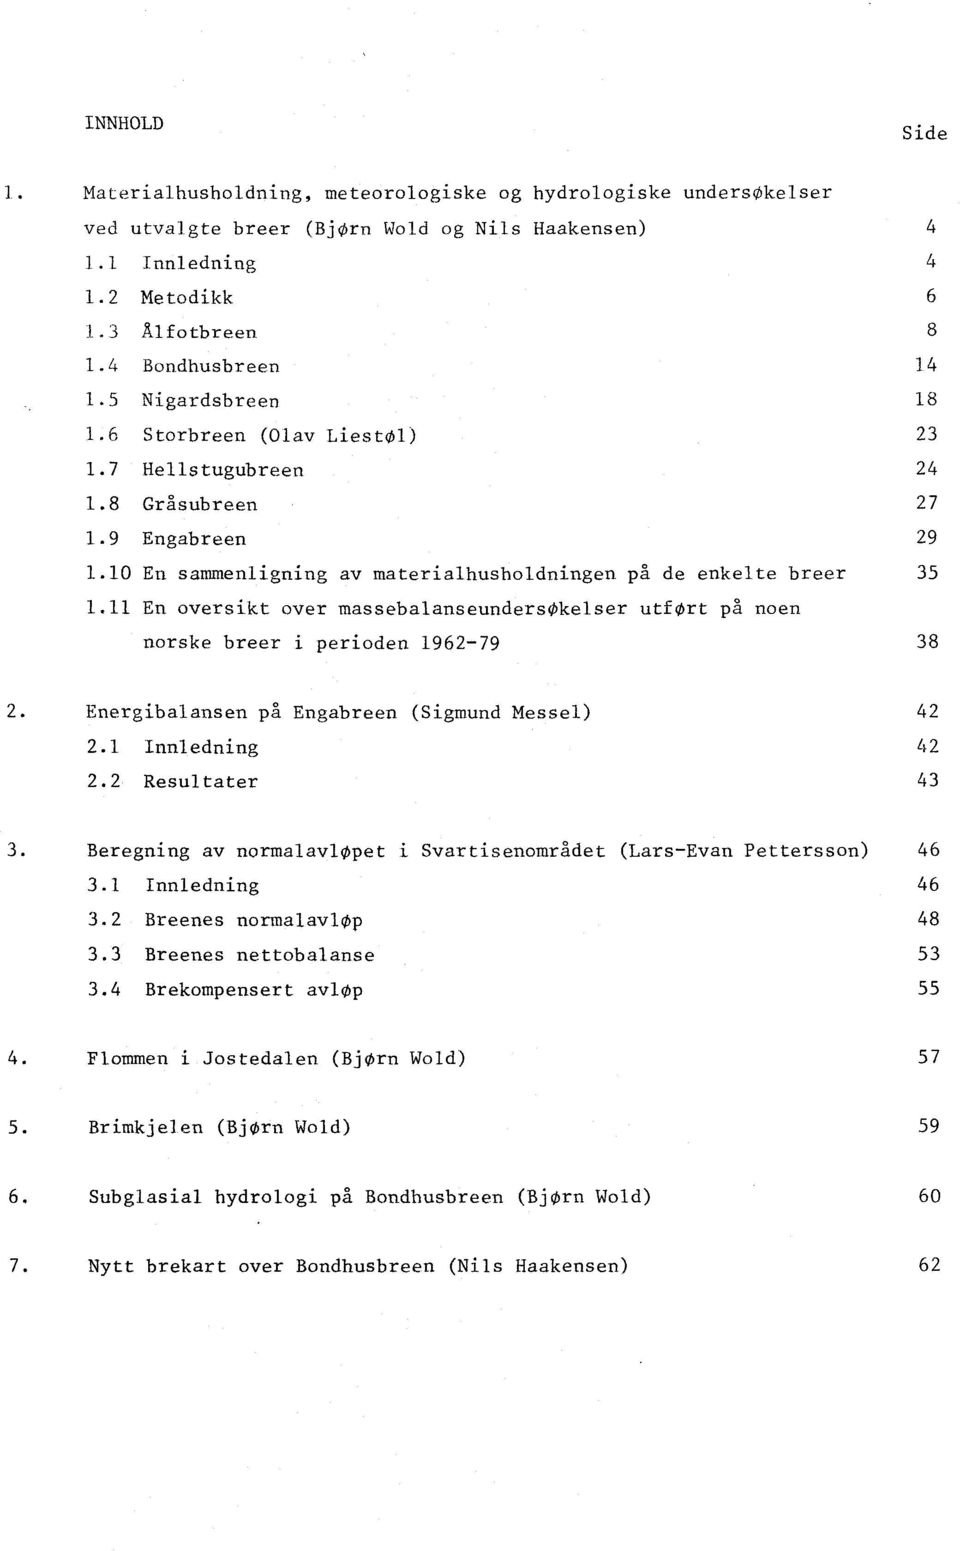 11 En oversikt over massebalanseundersøkelser utført på noen norske breer i perioden 1962-79 38 2. Energibalansen på Engabreen (Sigmund Messel) 2.1 nnledning 2.2 Resultater 42 42 43 3.